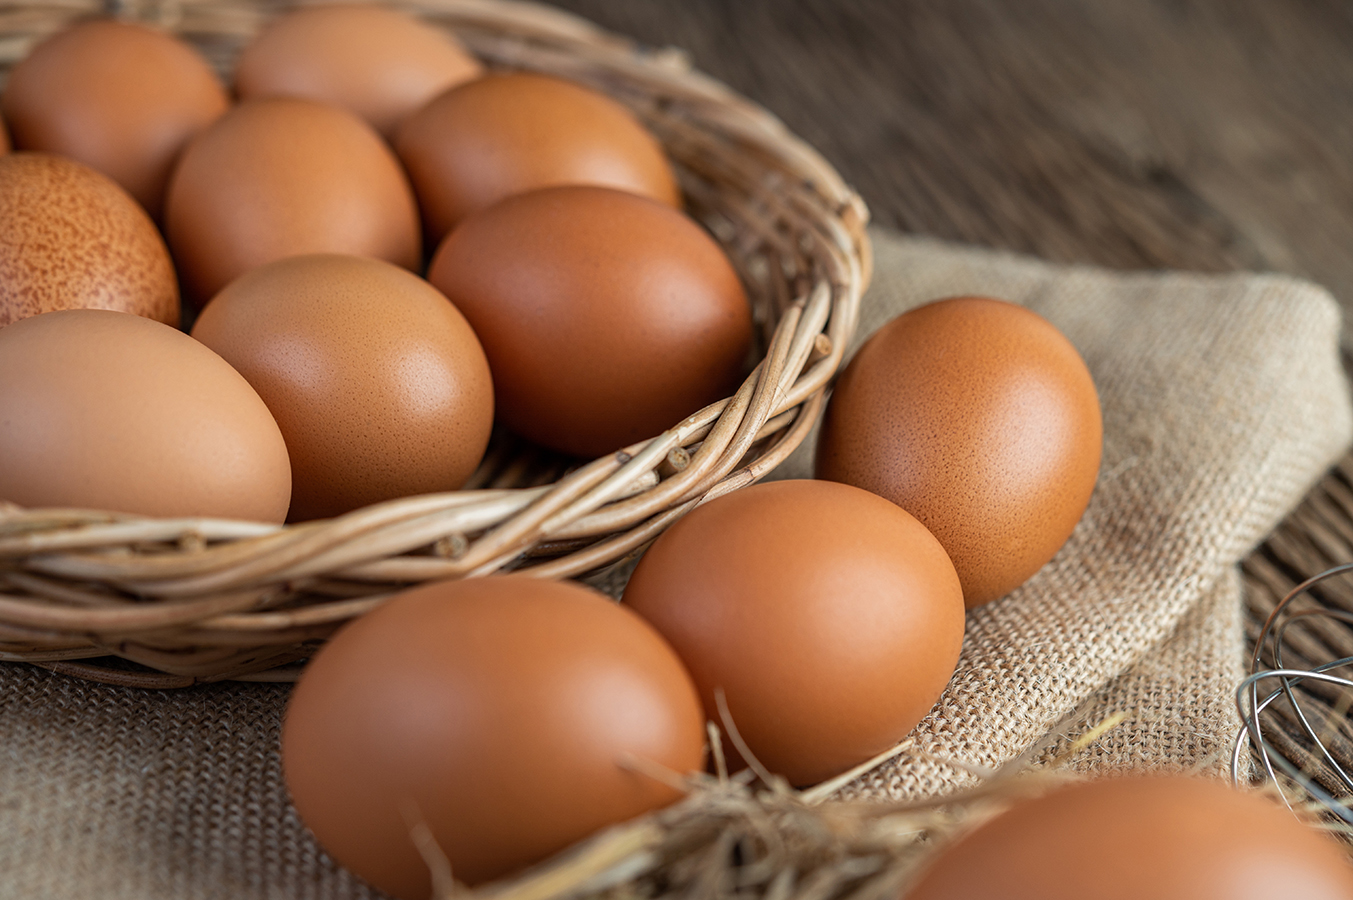 Comer huevos no está asociado con enfermedades cardiovasculares